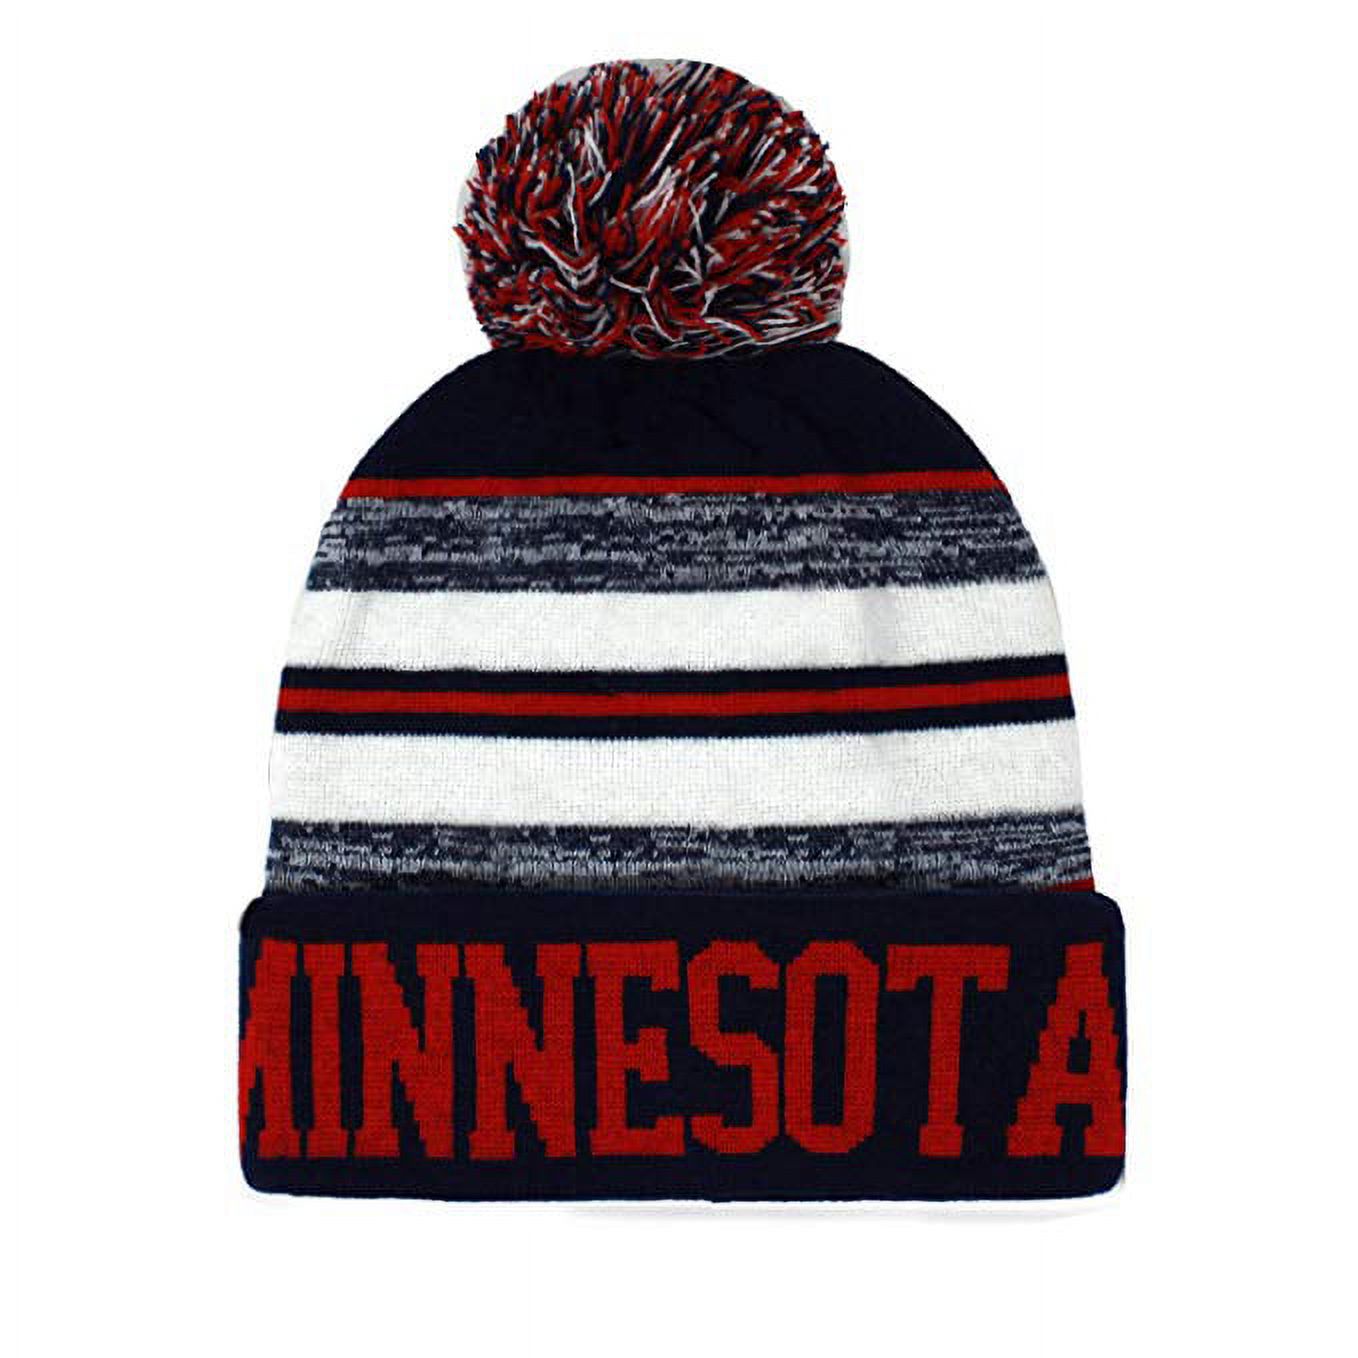 Minnesota Men's Blended Stripe Winter Knit Pom Beanie Hat (Navy/Red) - image 1 of 1